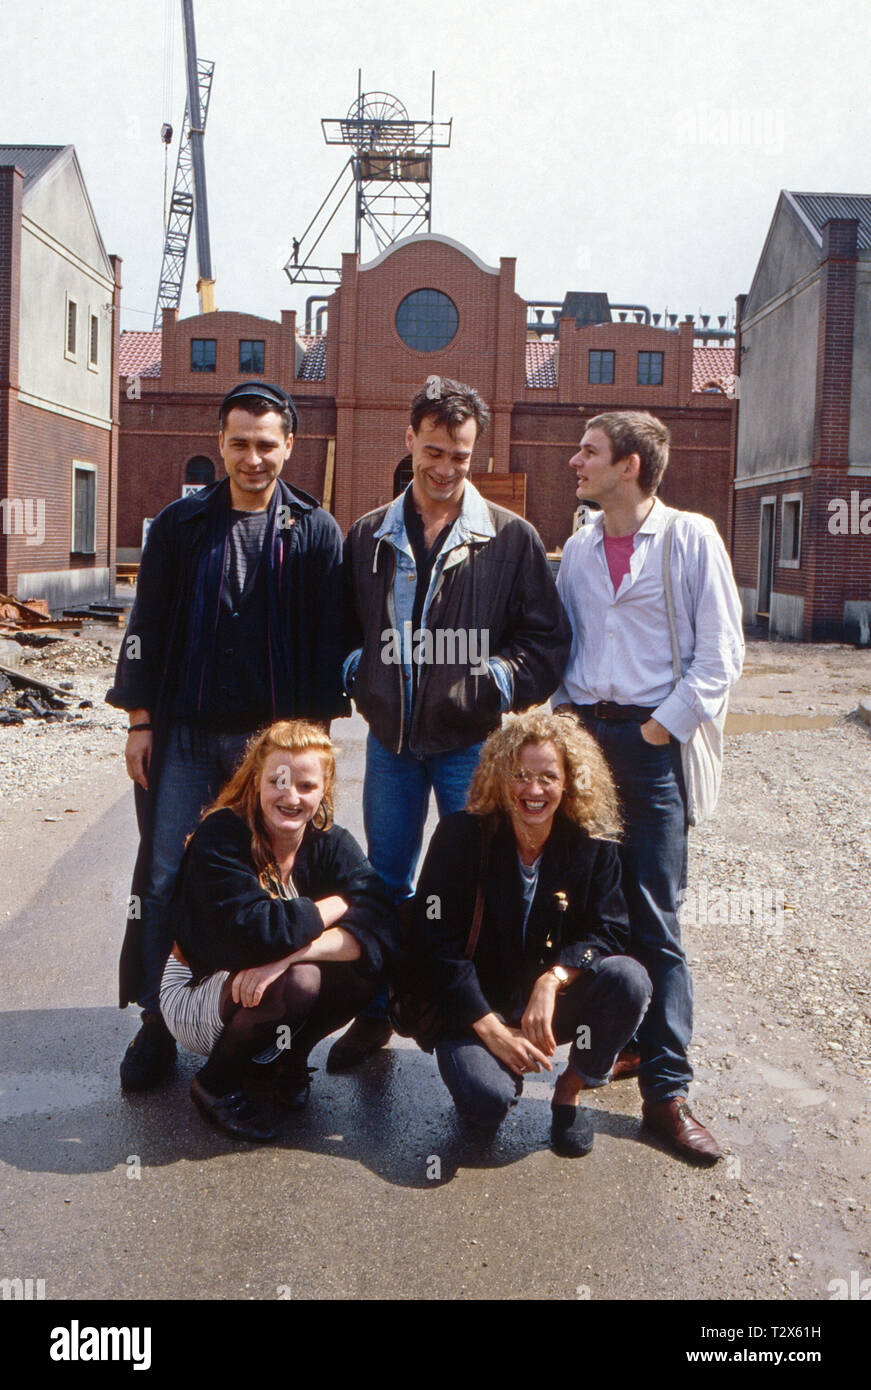 Rote Erde, Fernsehserie, Deutschland 1983: Hansa Czypionka Darsteller, Nina Petri, Klaus j. Behrendt, Margarita Broich, Max Herbrechter Foto de stock